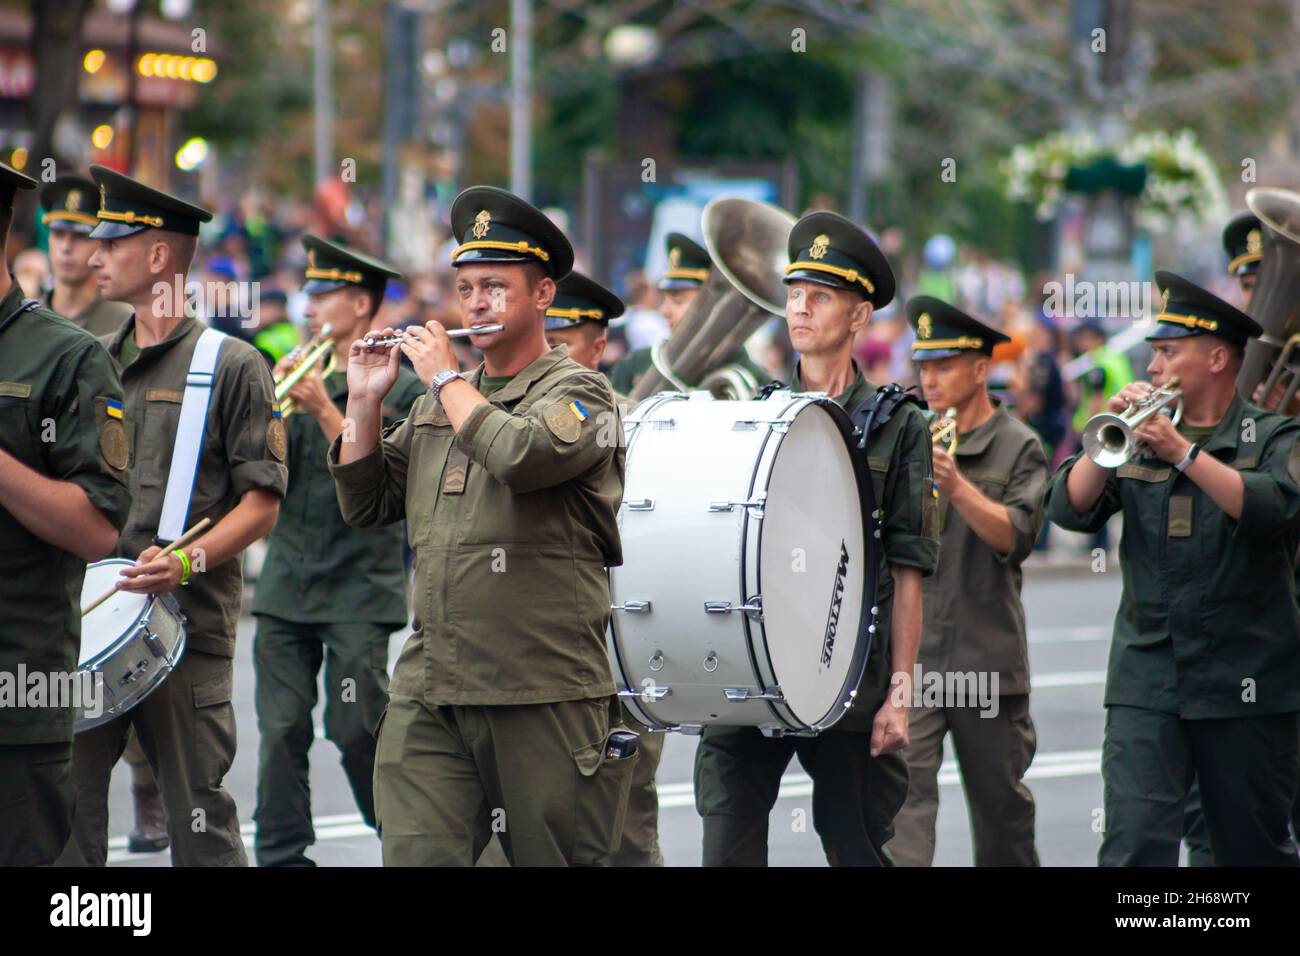 Ukraine, Kiev - 18 août 2021 : bande militaire.Instruments de musique à vent.Les soldats jouent de la musique.L'armée ukrainienne marche dans le défilé.Marche de la foule.Soldats de l'armée. Banque D'Images